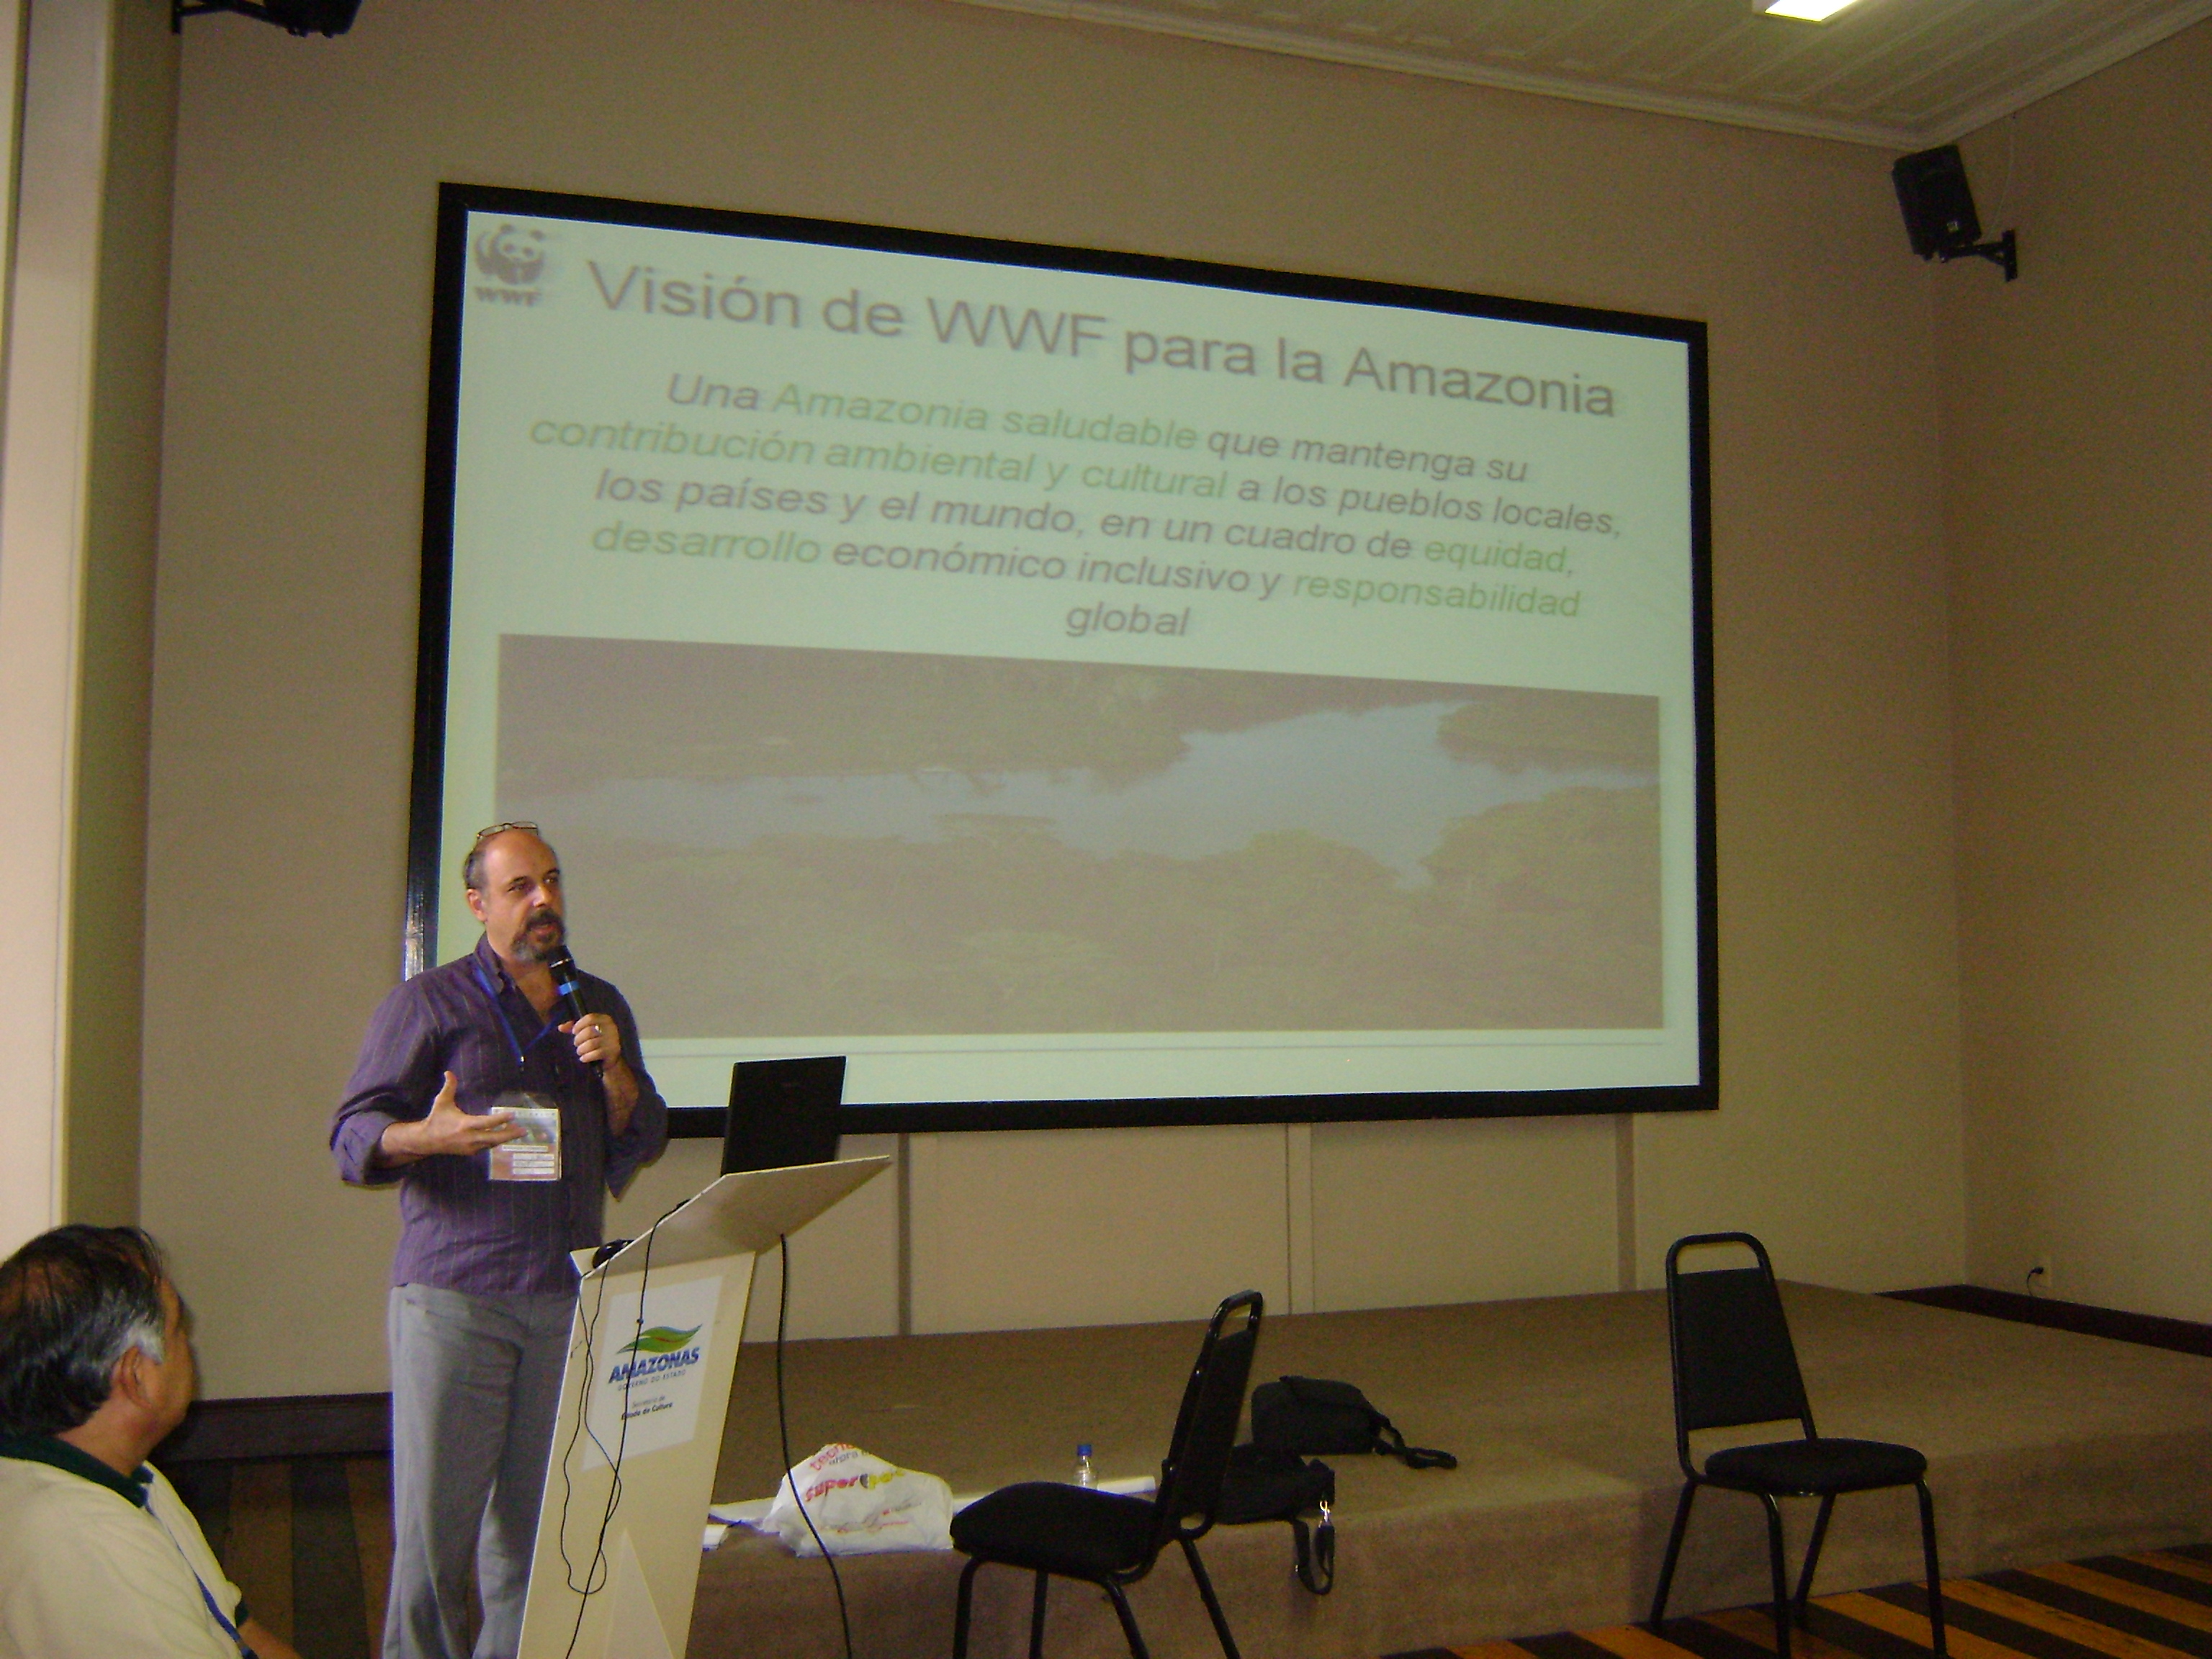 Líder da Iniciativa Amazônia Viva da Rede WWF, Cláudio Maretti, apresenta a iniciativa aos participantes de um dos grupos de trabalho do encontro.